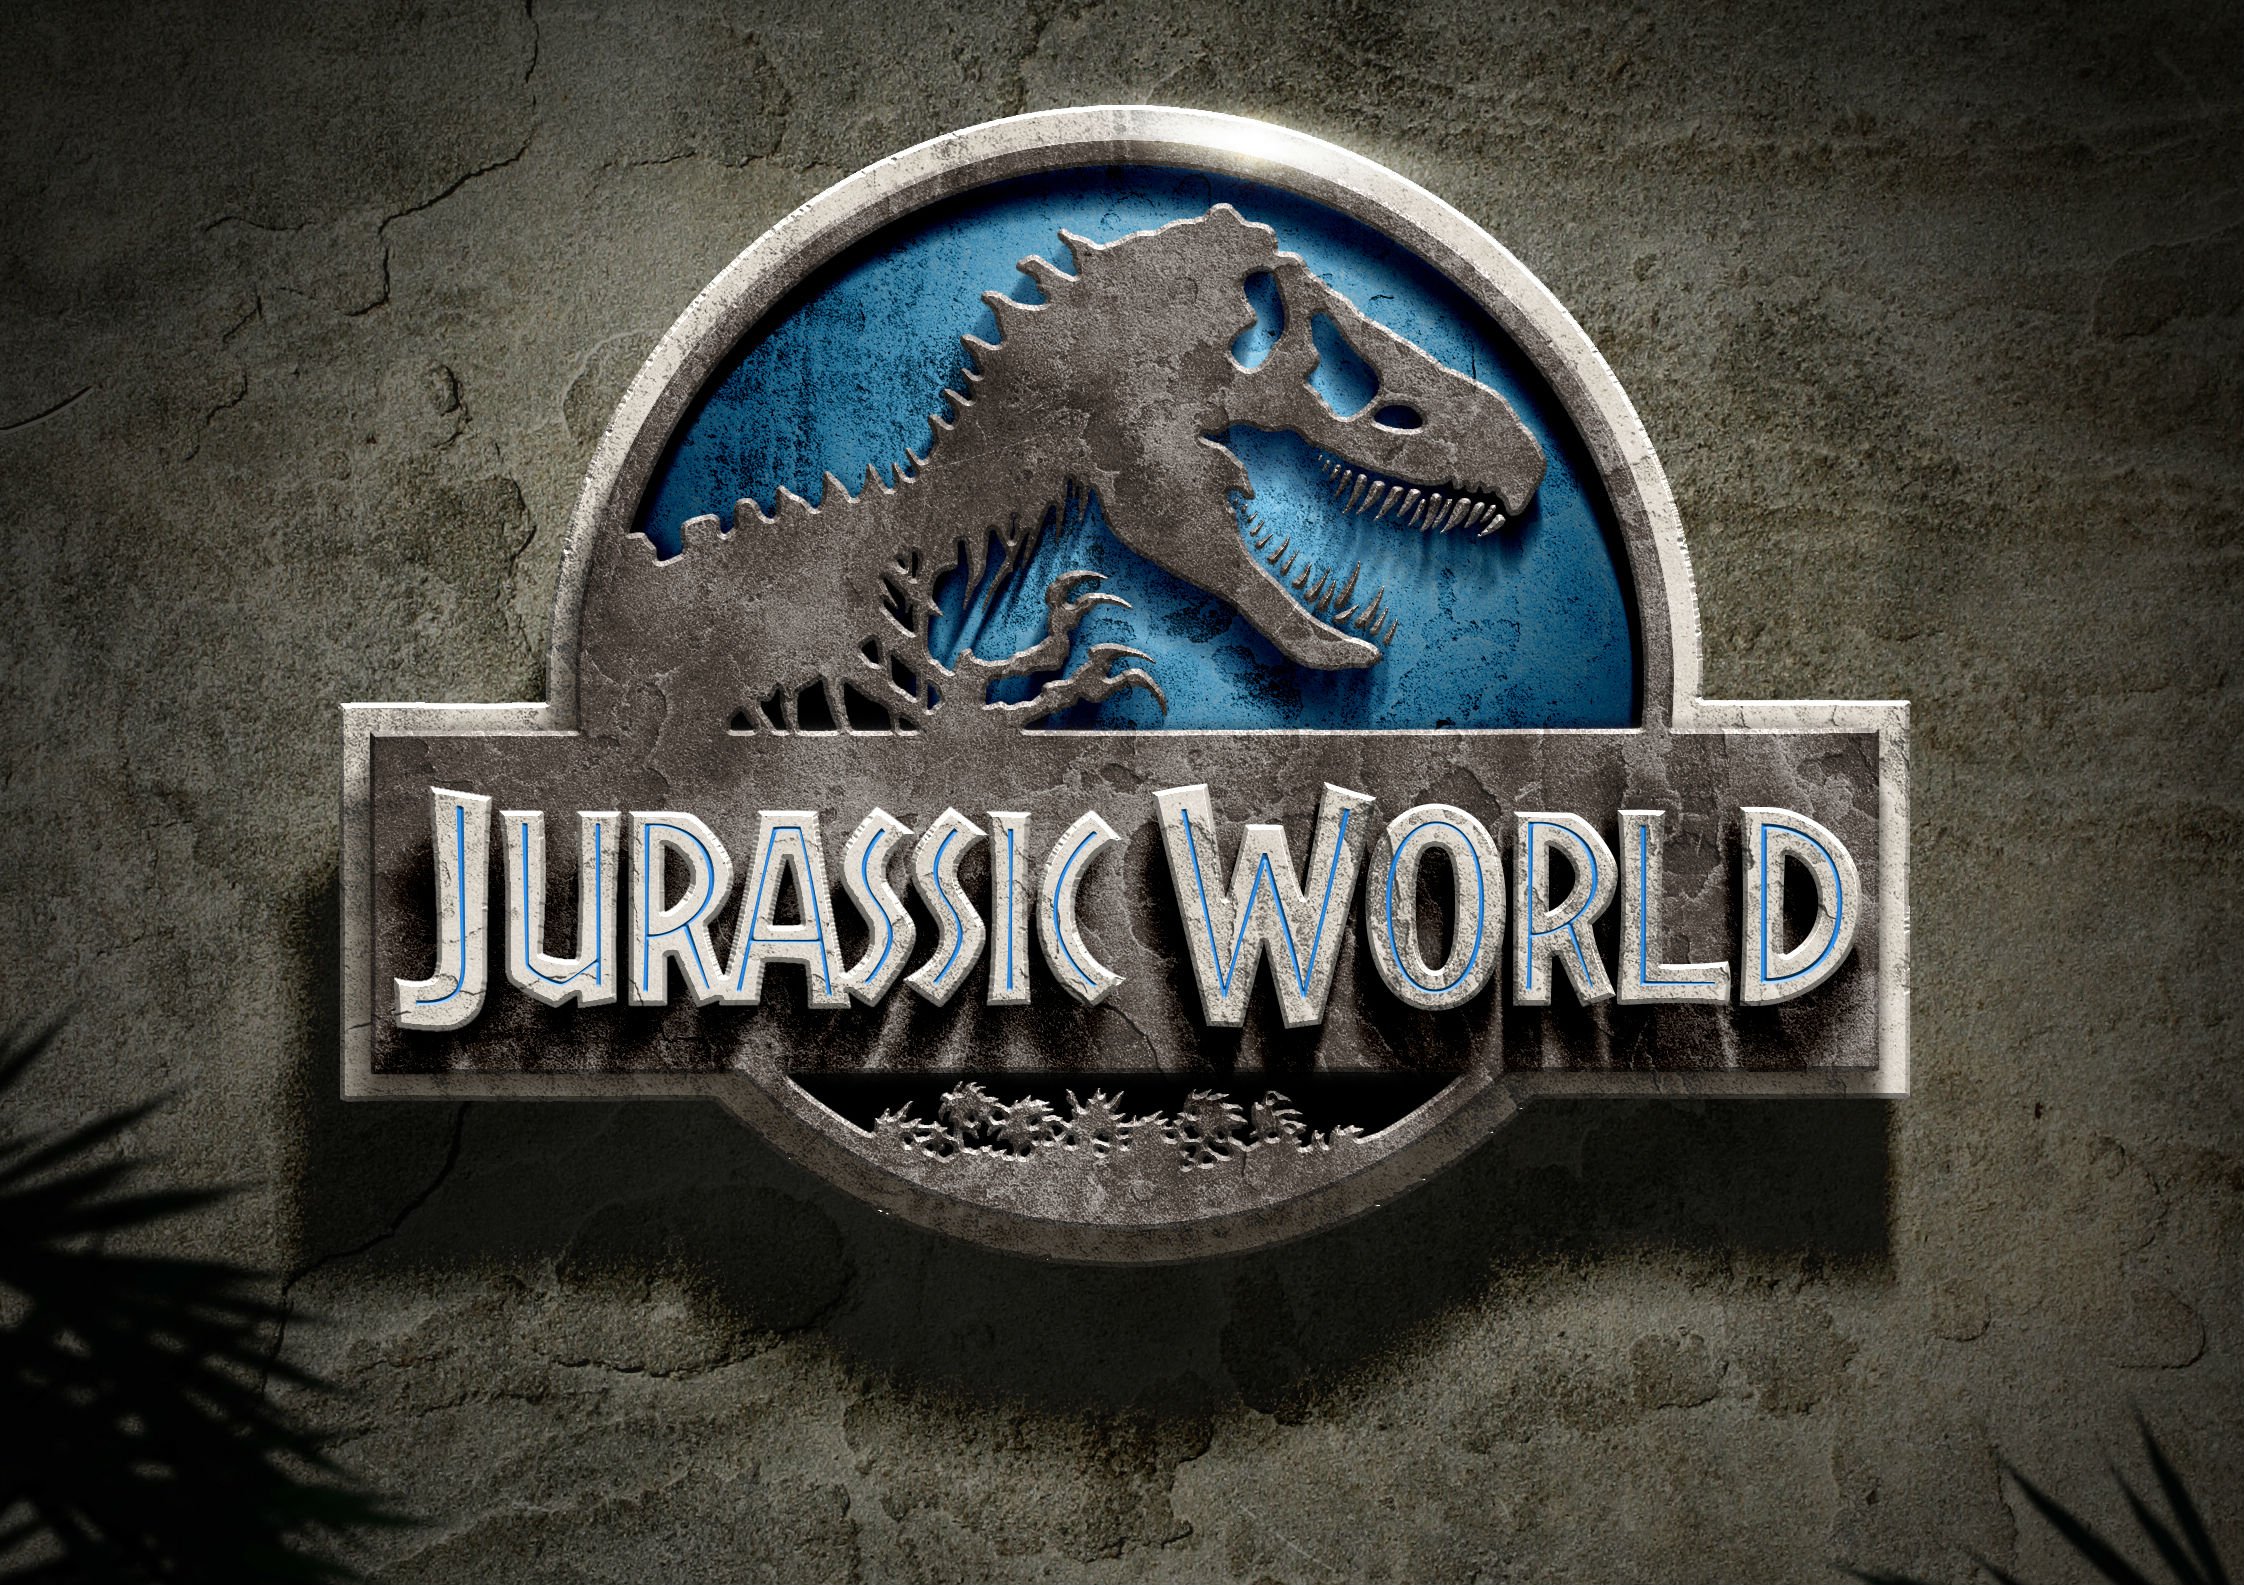 Jurassic World Adventure Sci Fi Dinosaur Fantasy Film Park